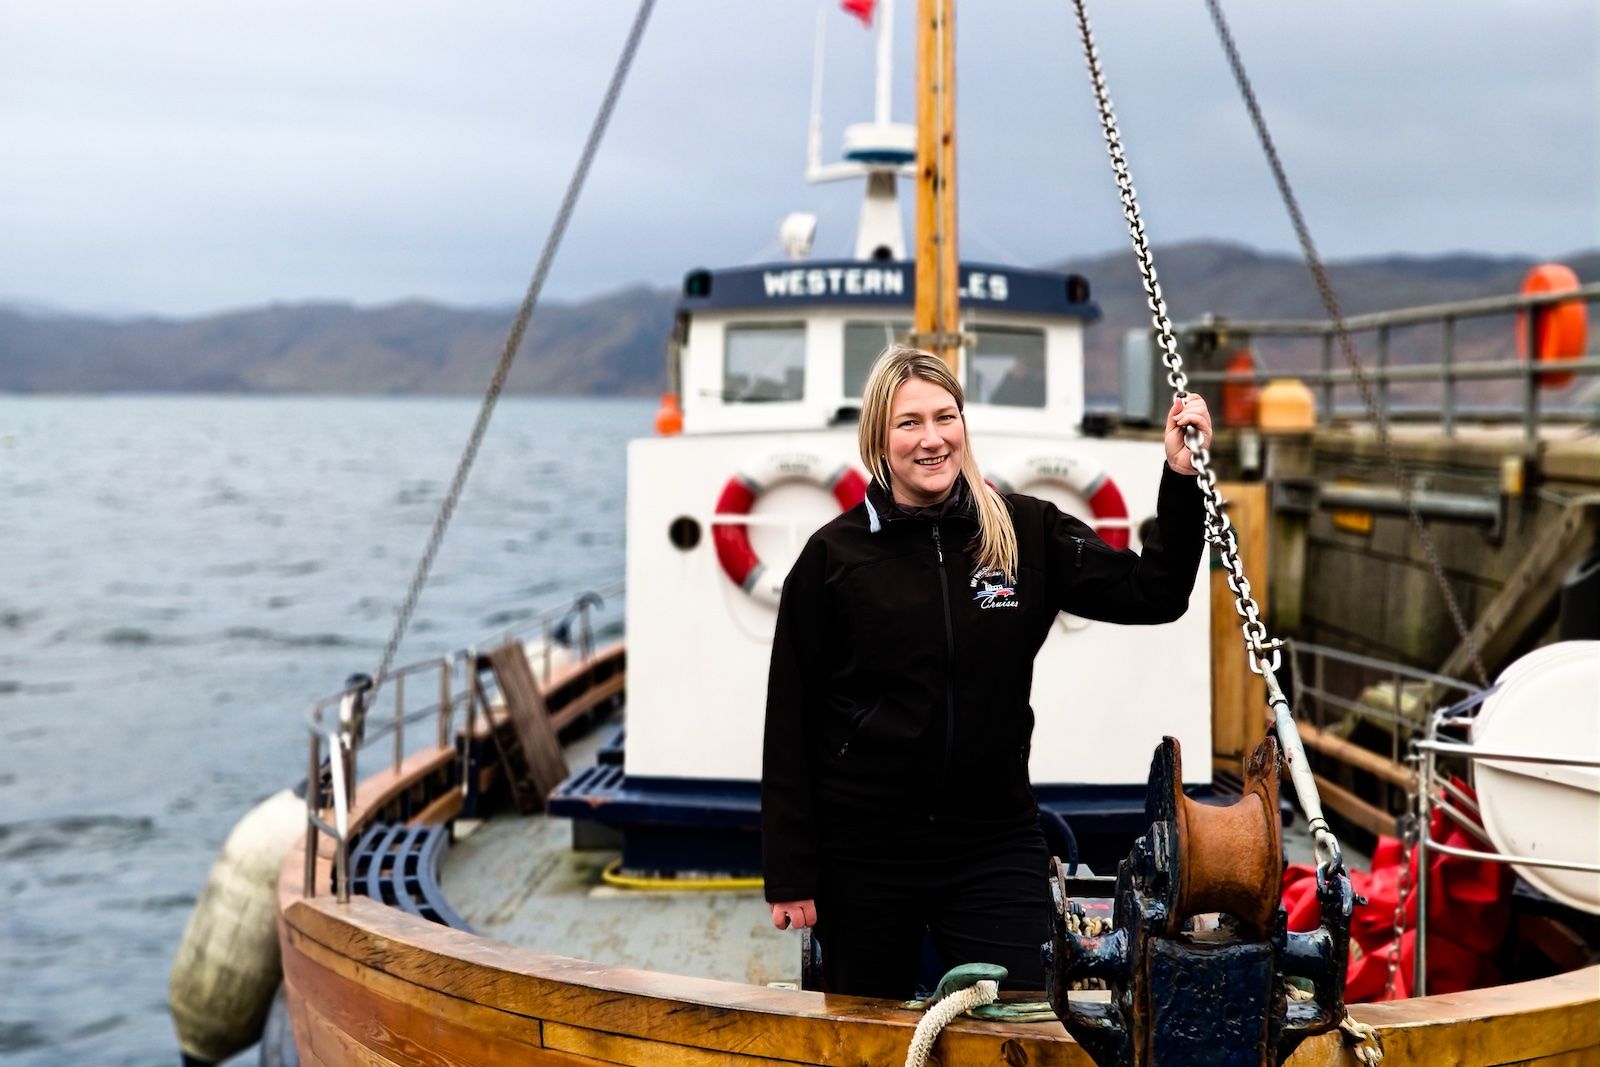 Пример фотографии OnePlus, на которой изображена женщина на лодке